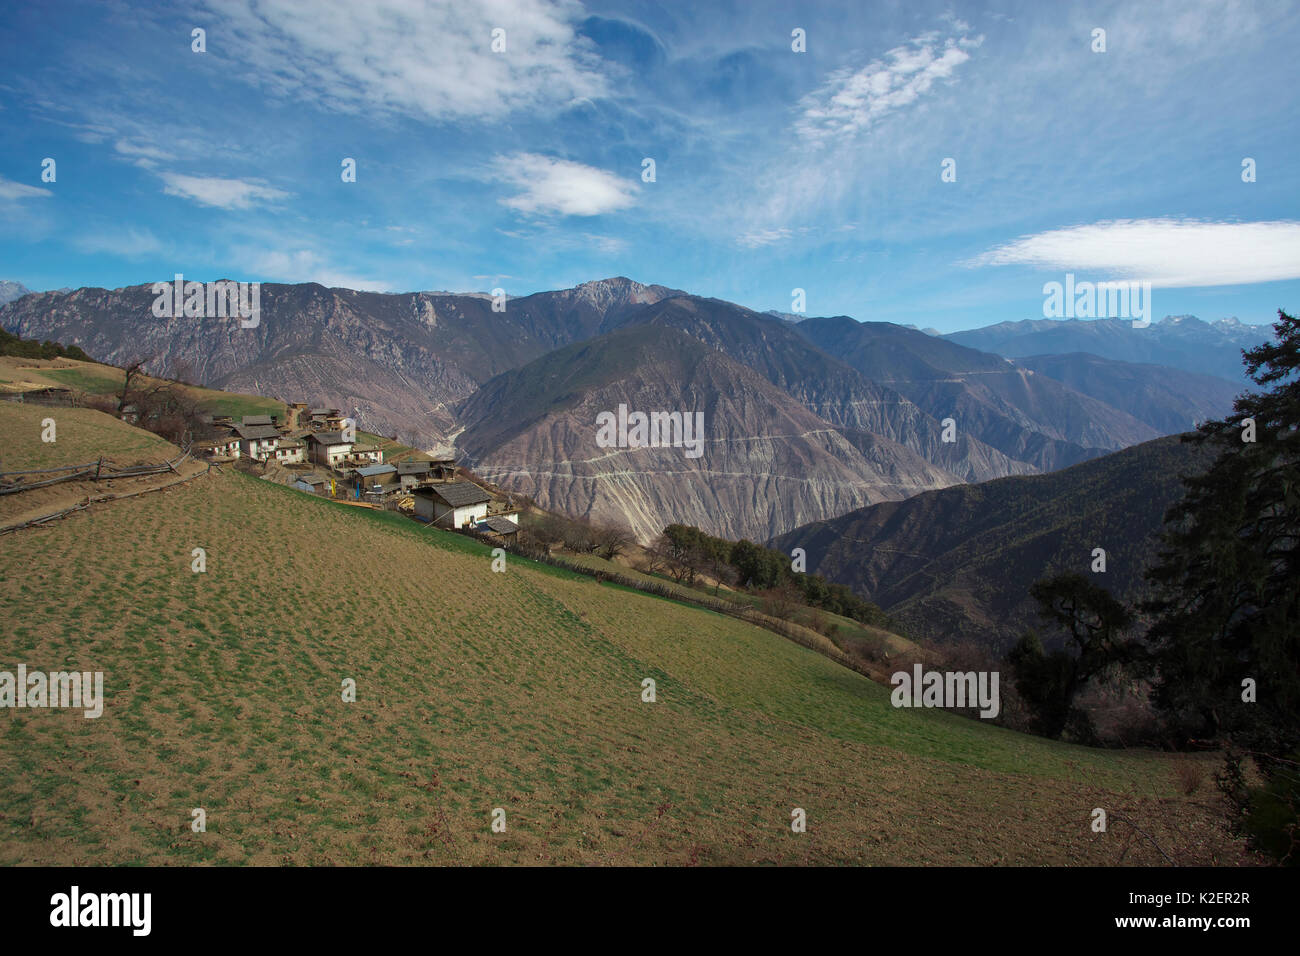 Villaggio sul versante Kawakarpo montagna, meri Snow Mountain National Park, nella provincia dello Yunnan in Cina, Gennaio 2014. Foto Stock